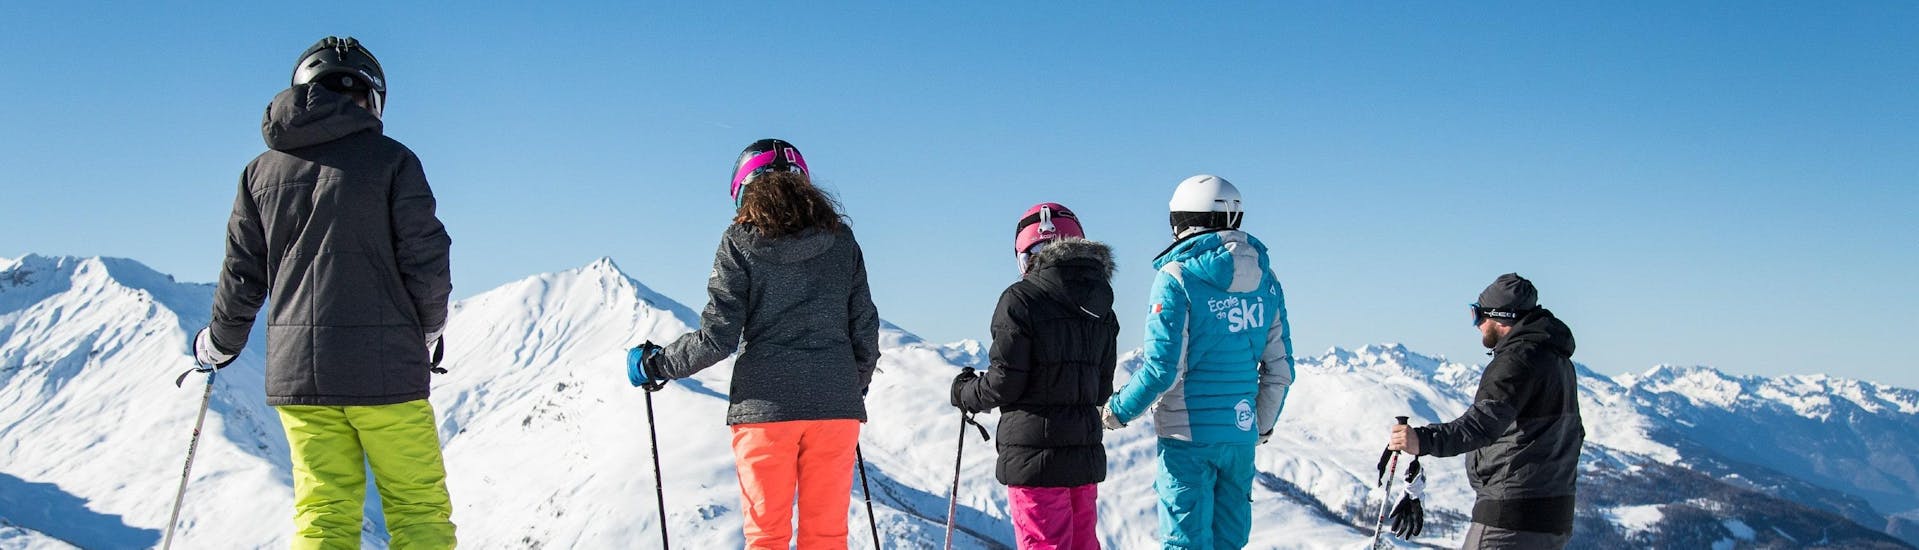 Lezioni di sci per adulti a partire da 13 anni per principianti.